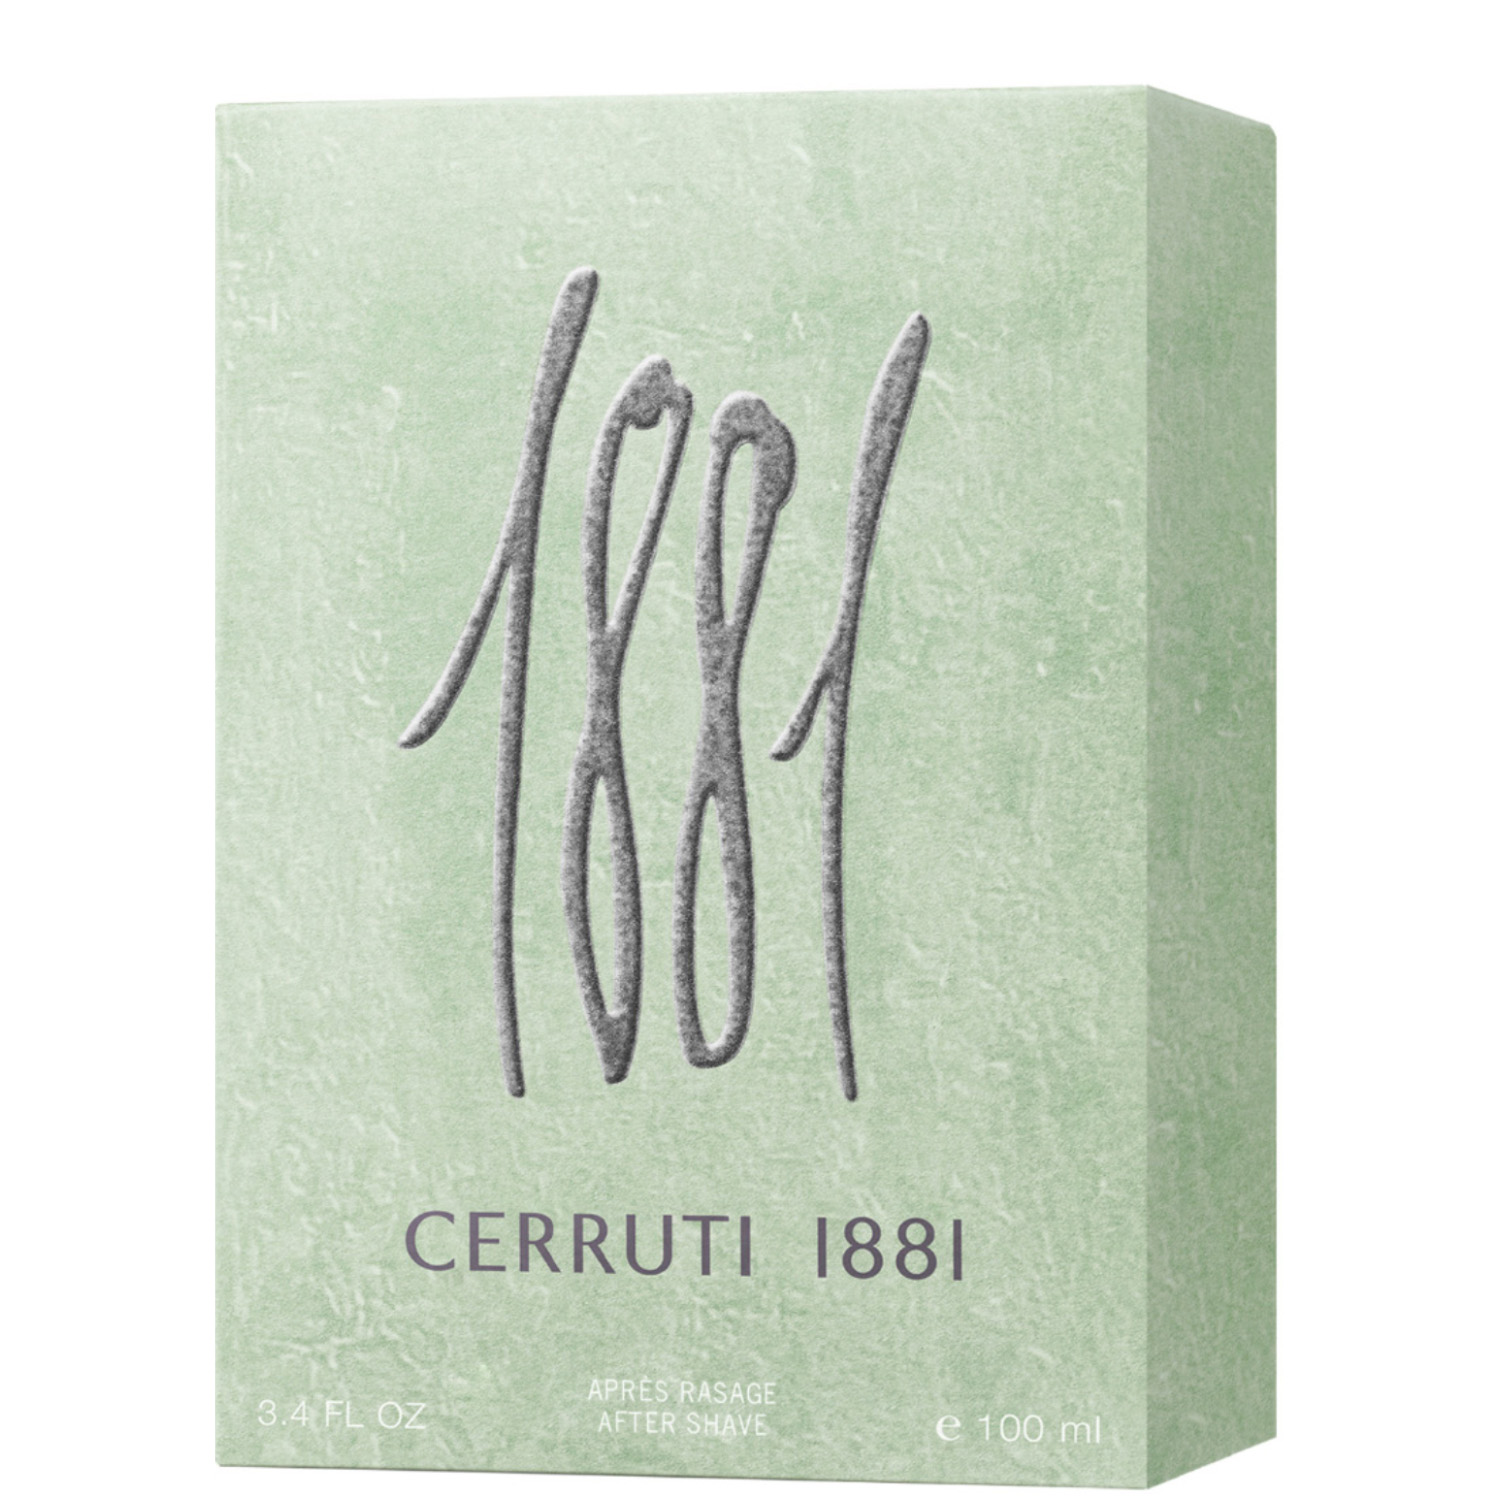 Cerruti 1881 Pour Homme After Shave 100ml